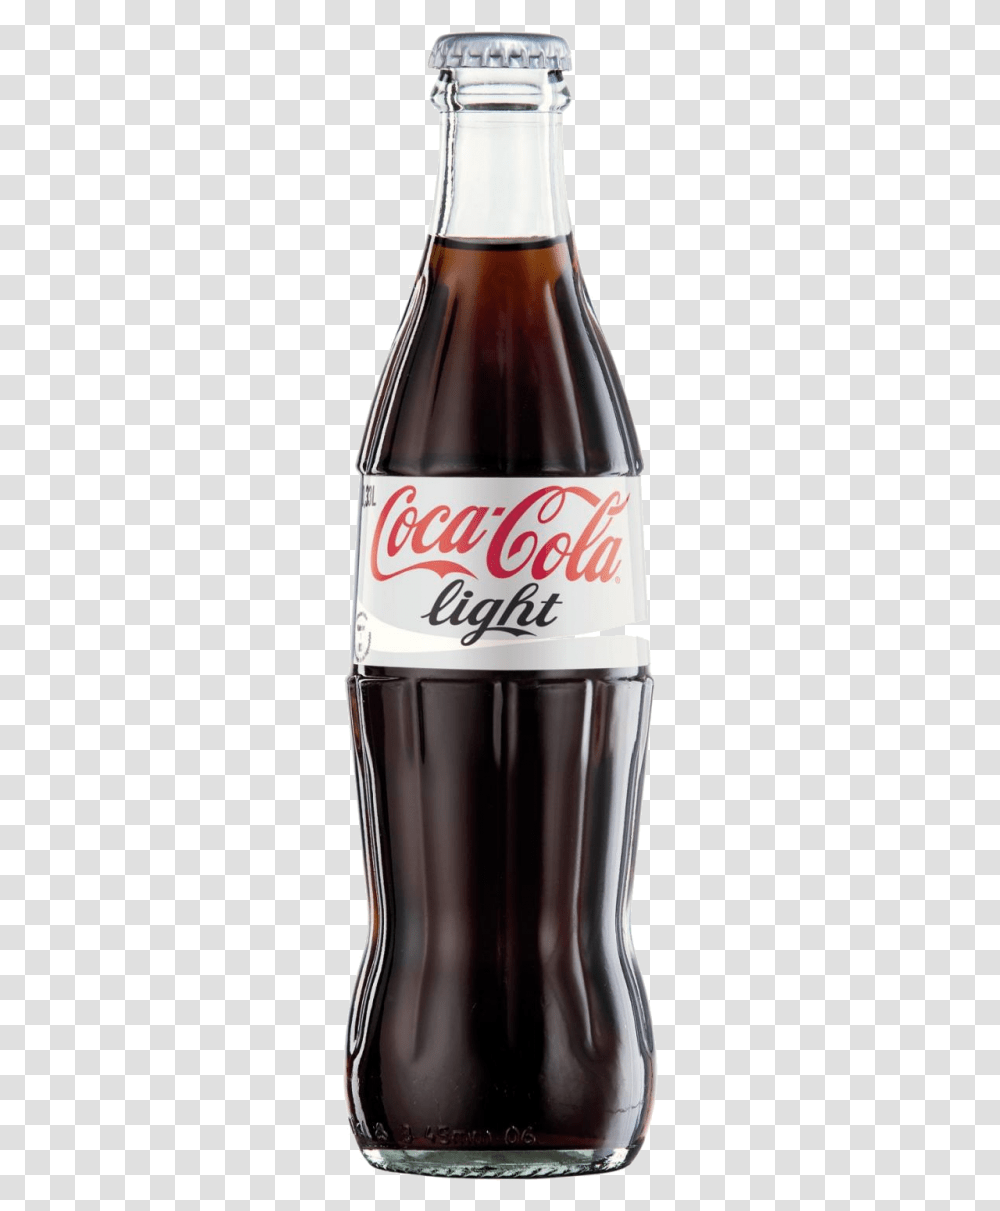 Coca Cola Bottle Image Coca Cola Light, Coke, Beverage, Drink, Beer Transparent Png